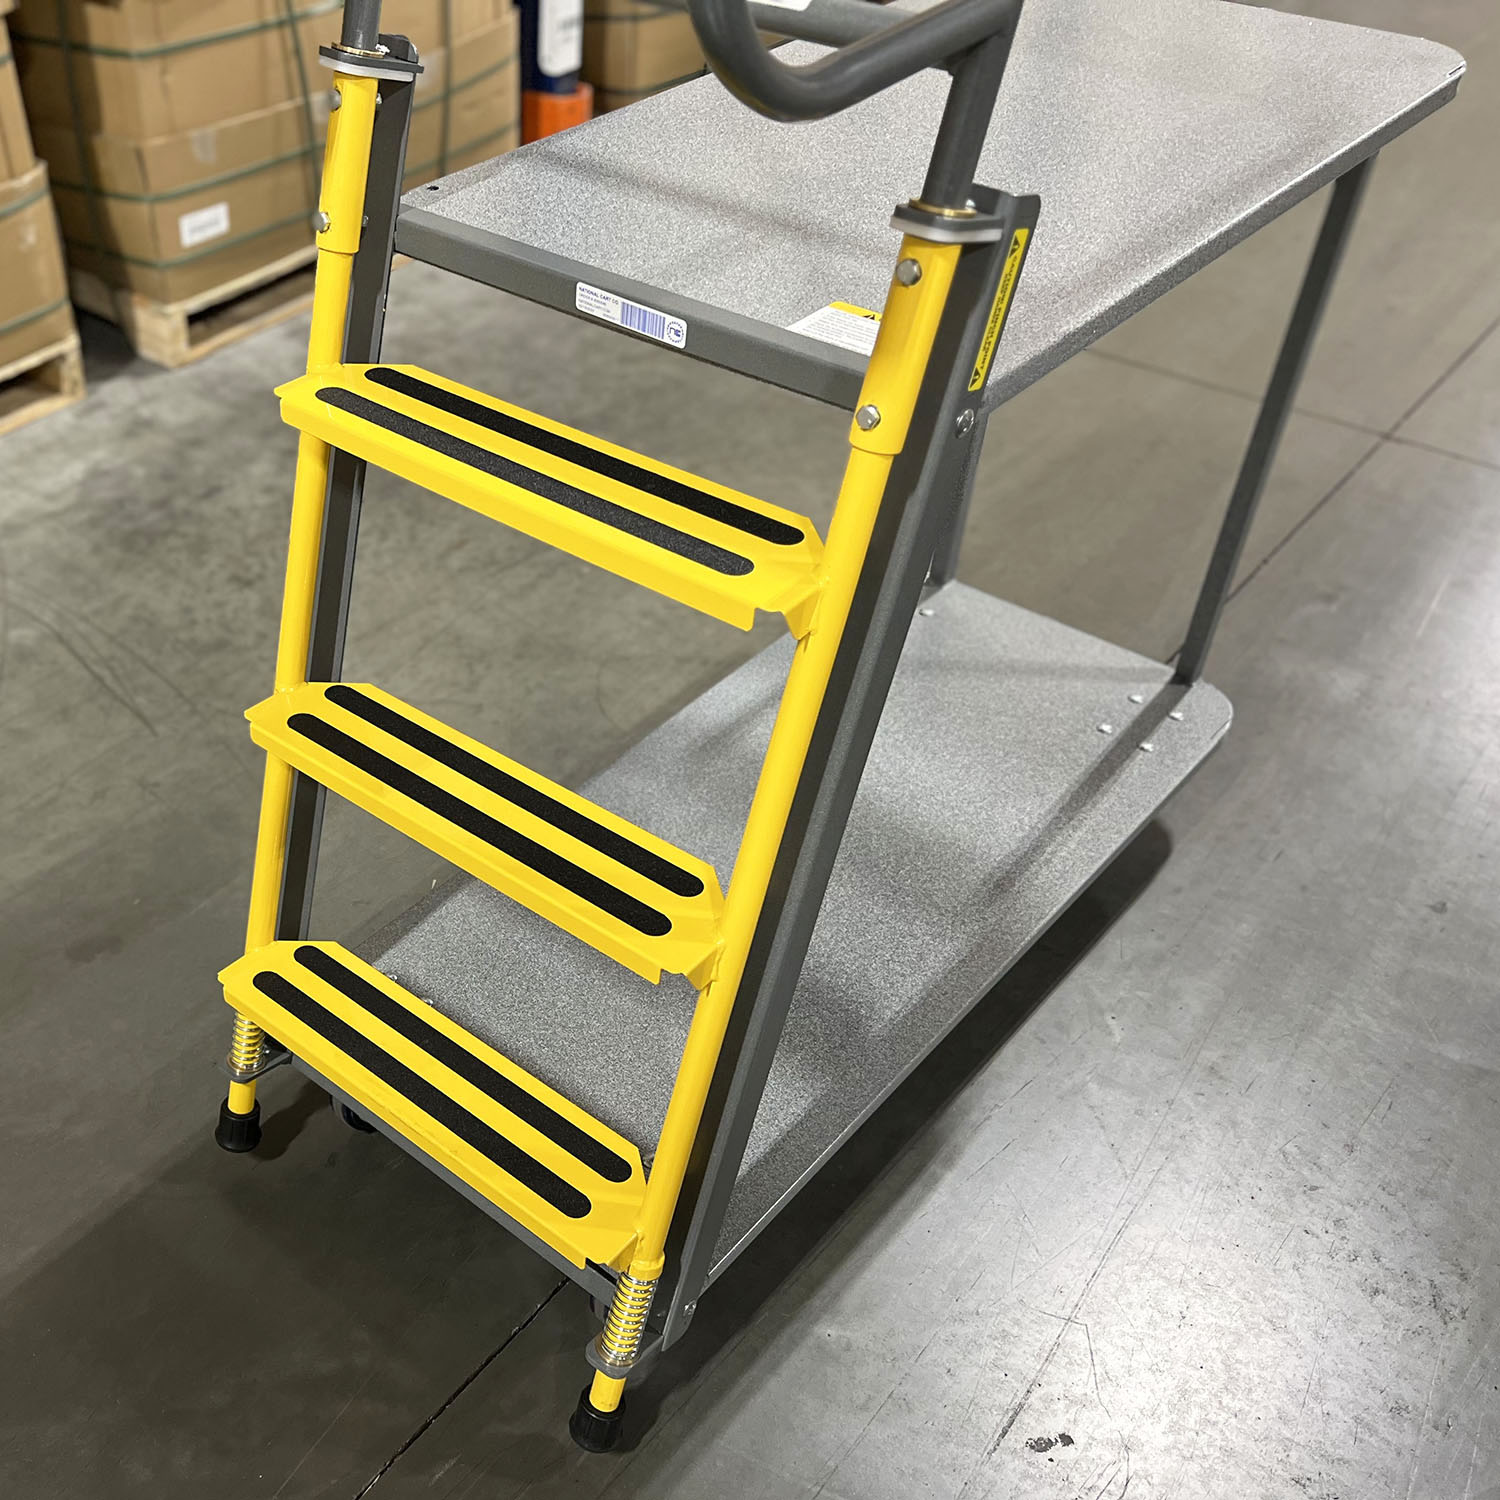 2 Shelf ladder cart, ladder picking cart industrial cart picking cart material handling distribution cart fulfillment cart